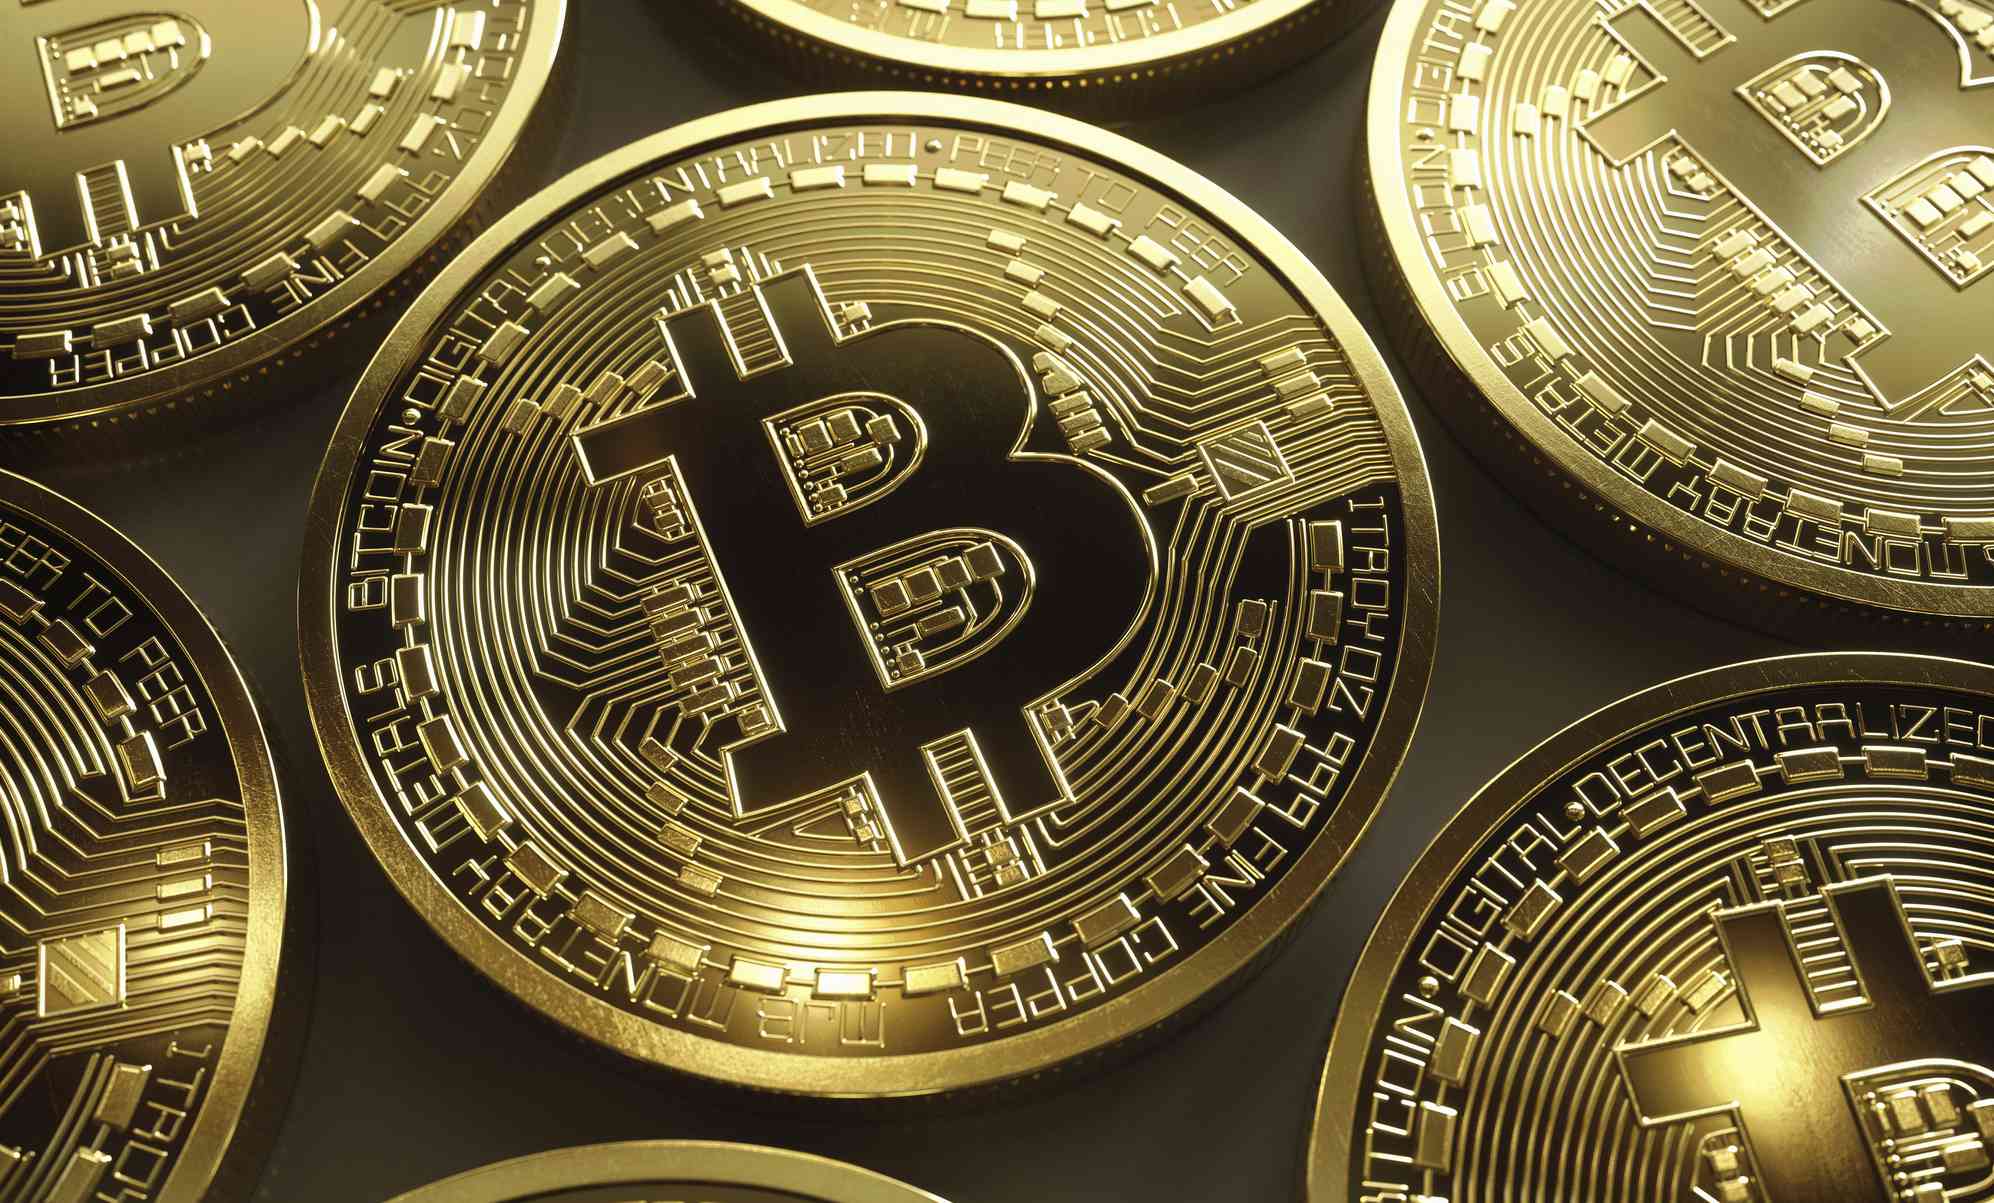 Bitcoin cash and Bitcoin gold